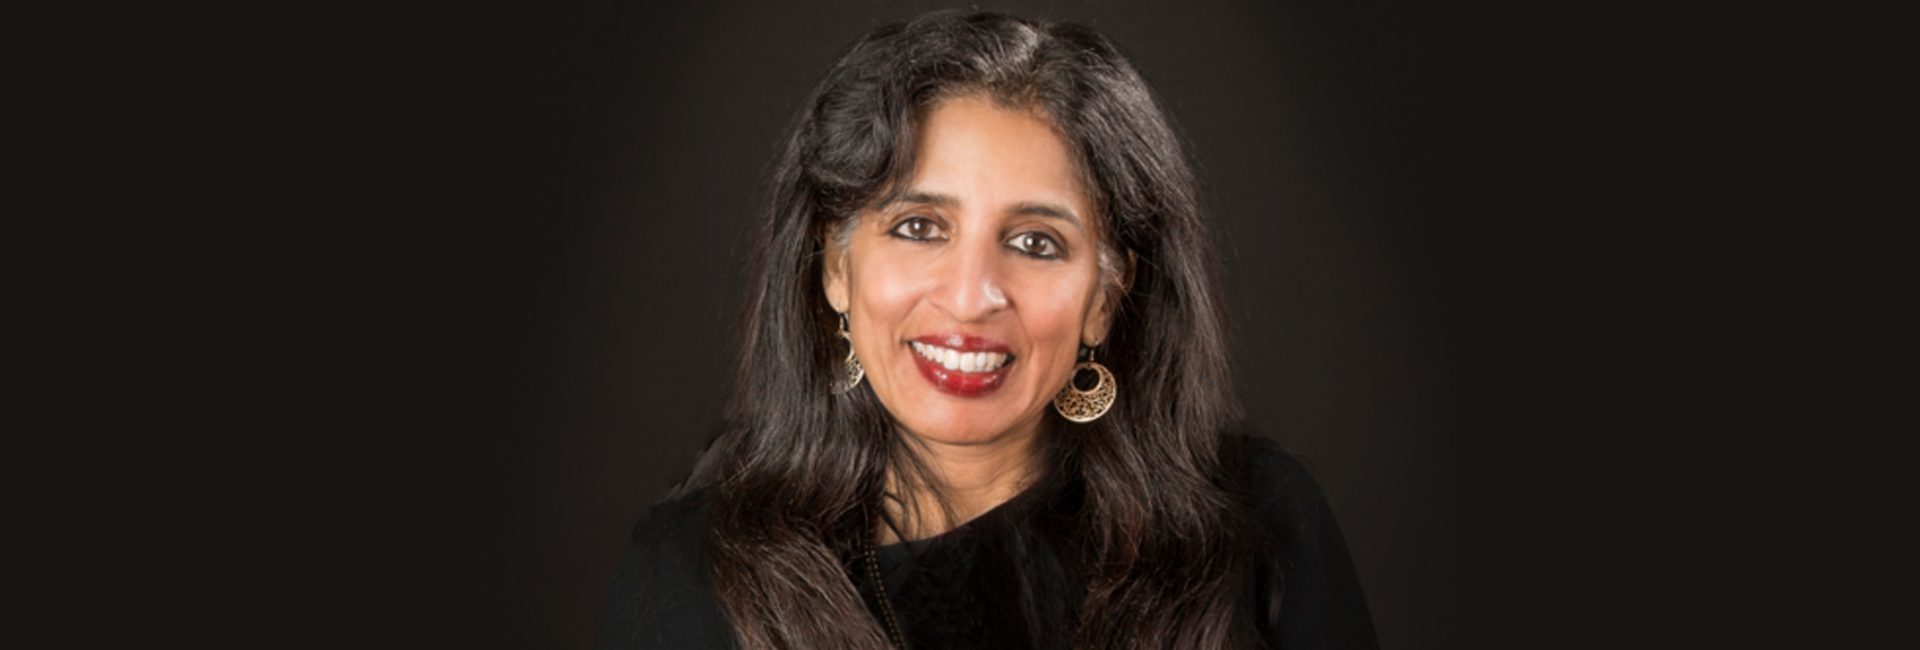 జైశ్రీ ఉల్లాల్: ఫోర్బ్స్ యొక్క 2022 అమెరికా ధనవంతుల స్వీయ-నిర్మిత మహిళల జాబితాలో ఉన్న భారతీయ సంతతికి చెందిన CEO